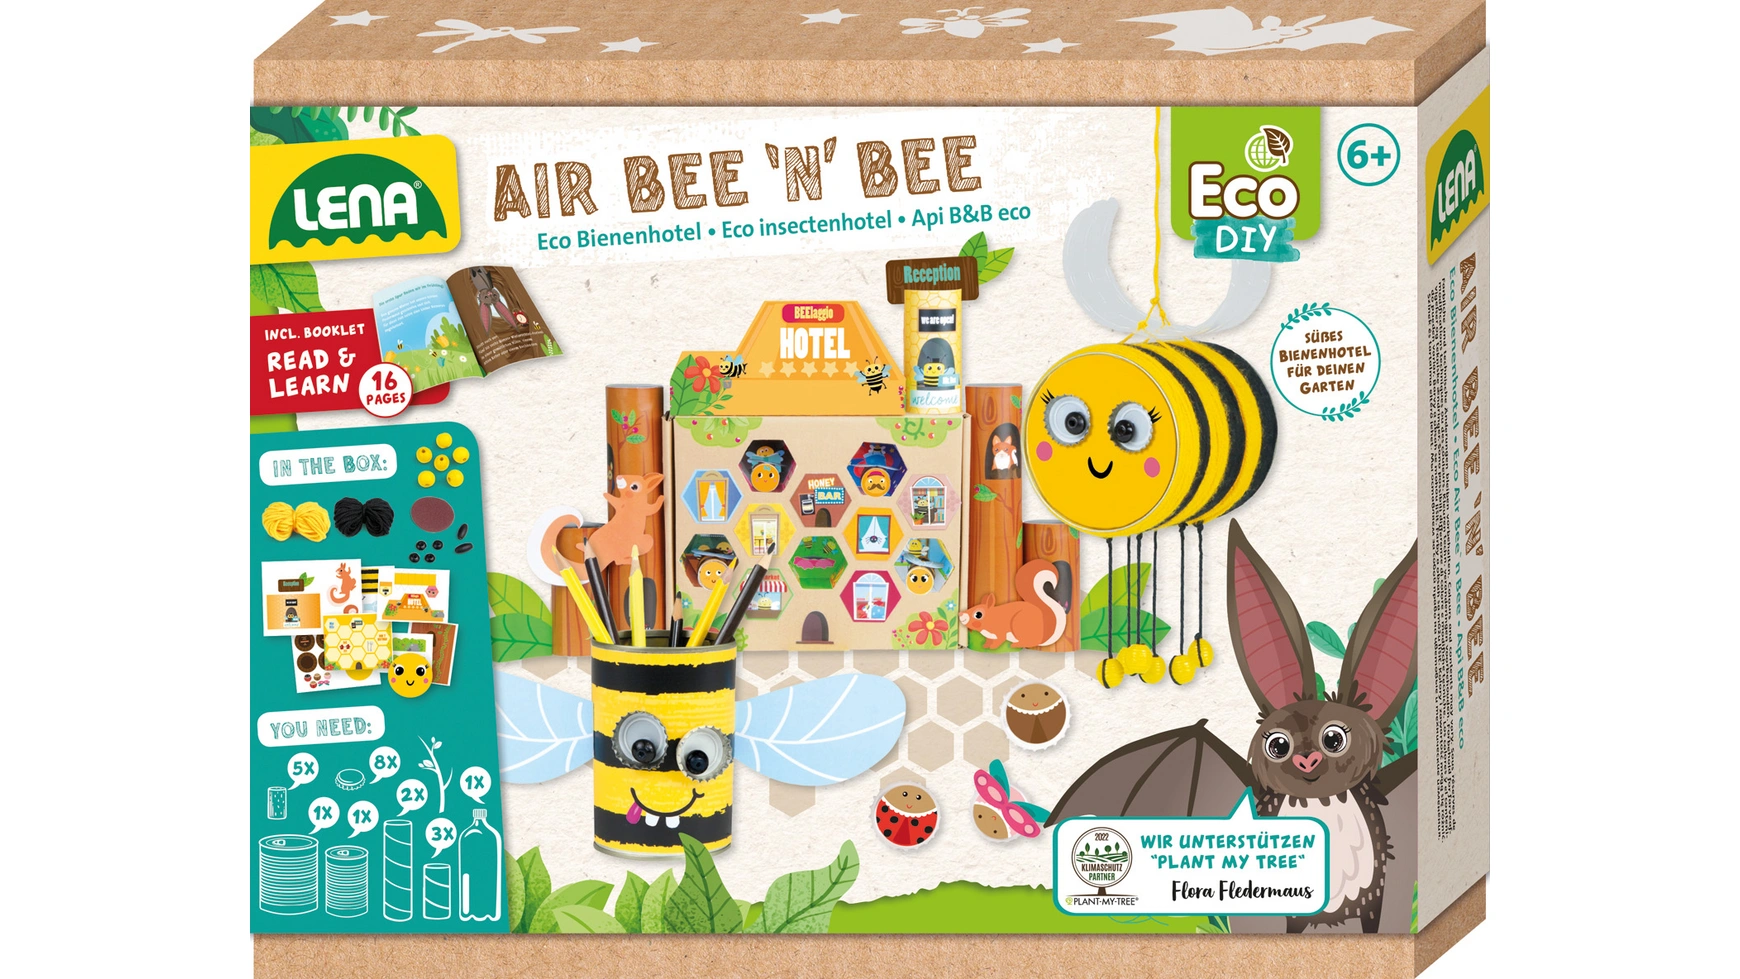 Eco air bee n bee, складной ящик Lena на садовой отель